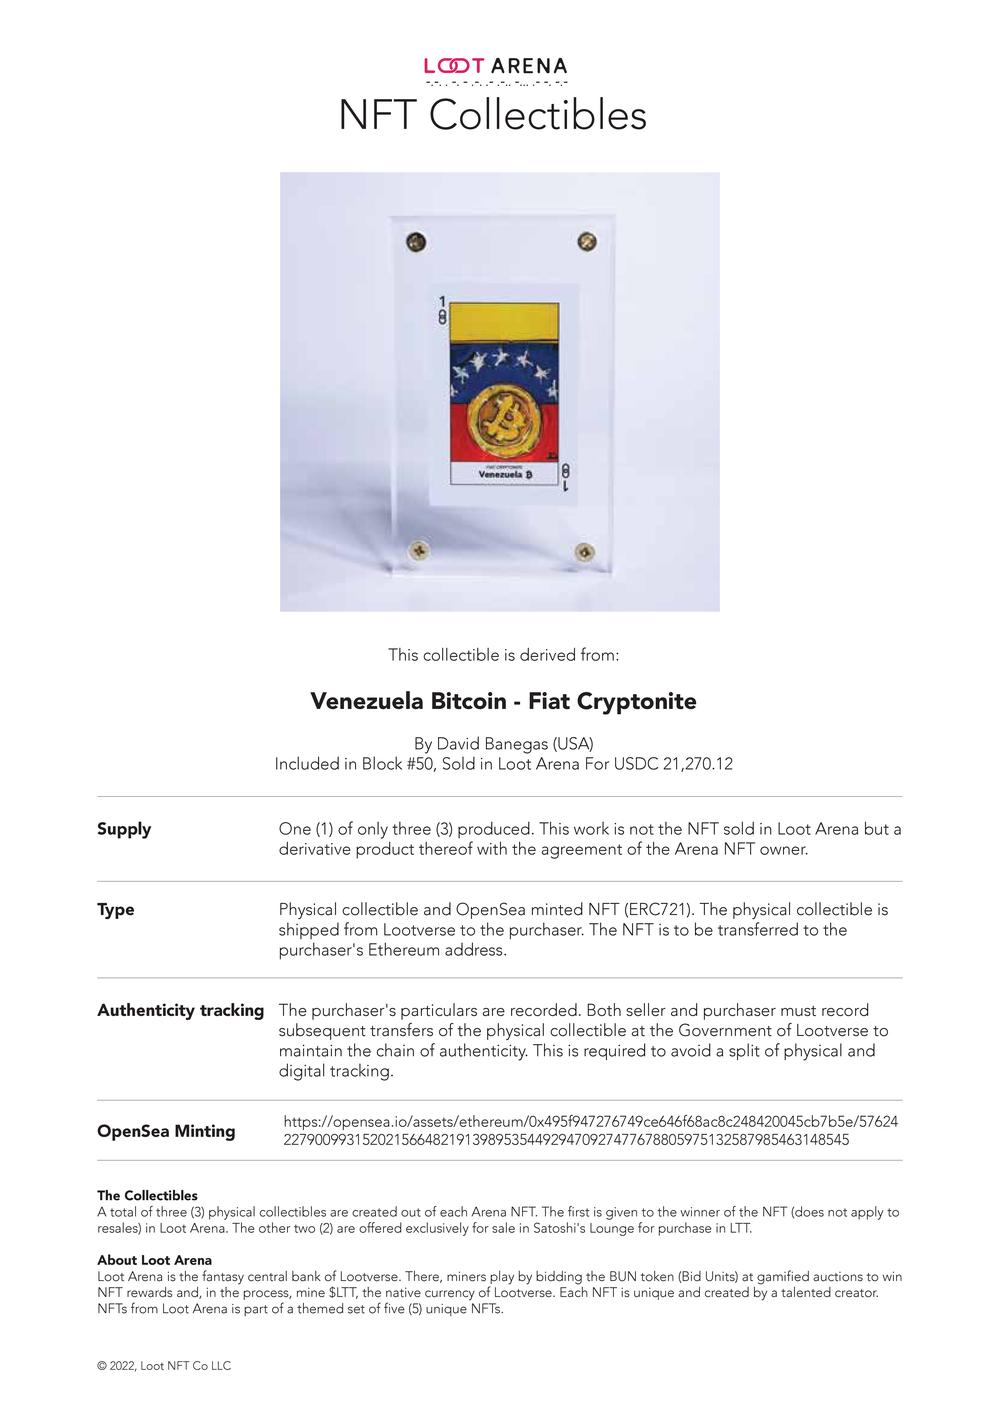 Contract_Venezuela Bitcoin.pdf